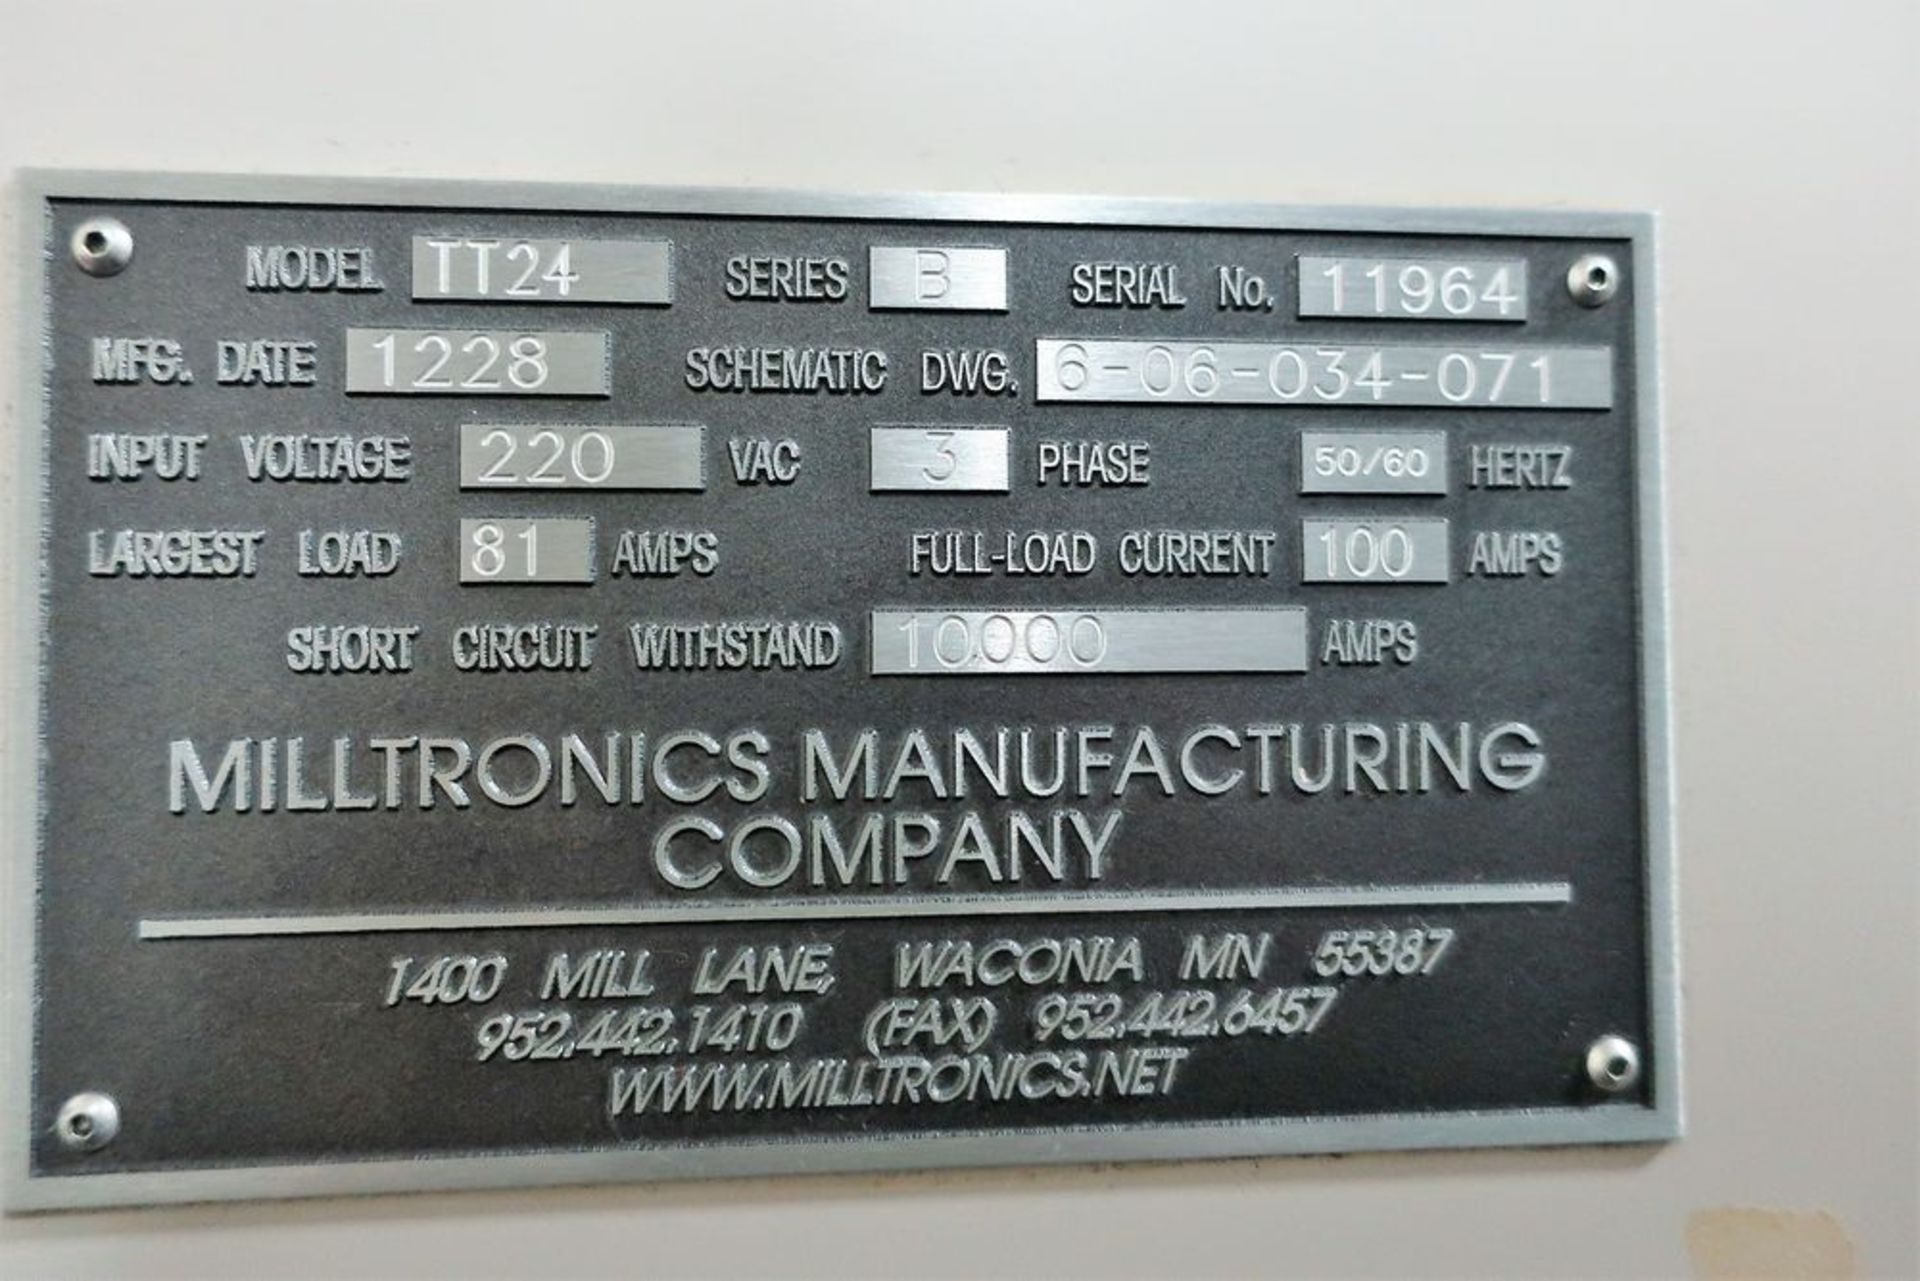 MILLTRONICS TT24 3-AXIS CNC VERTICAL MACHINING CENTER W/PALLET CHANGER, S/N 11964, NEW 2012 - Image 9 of 9